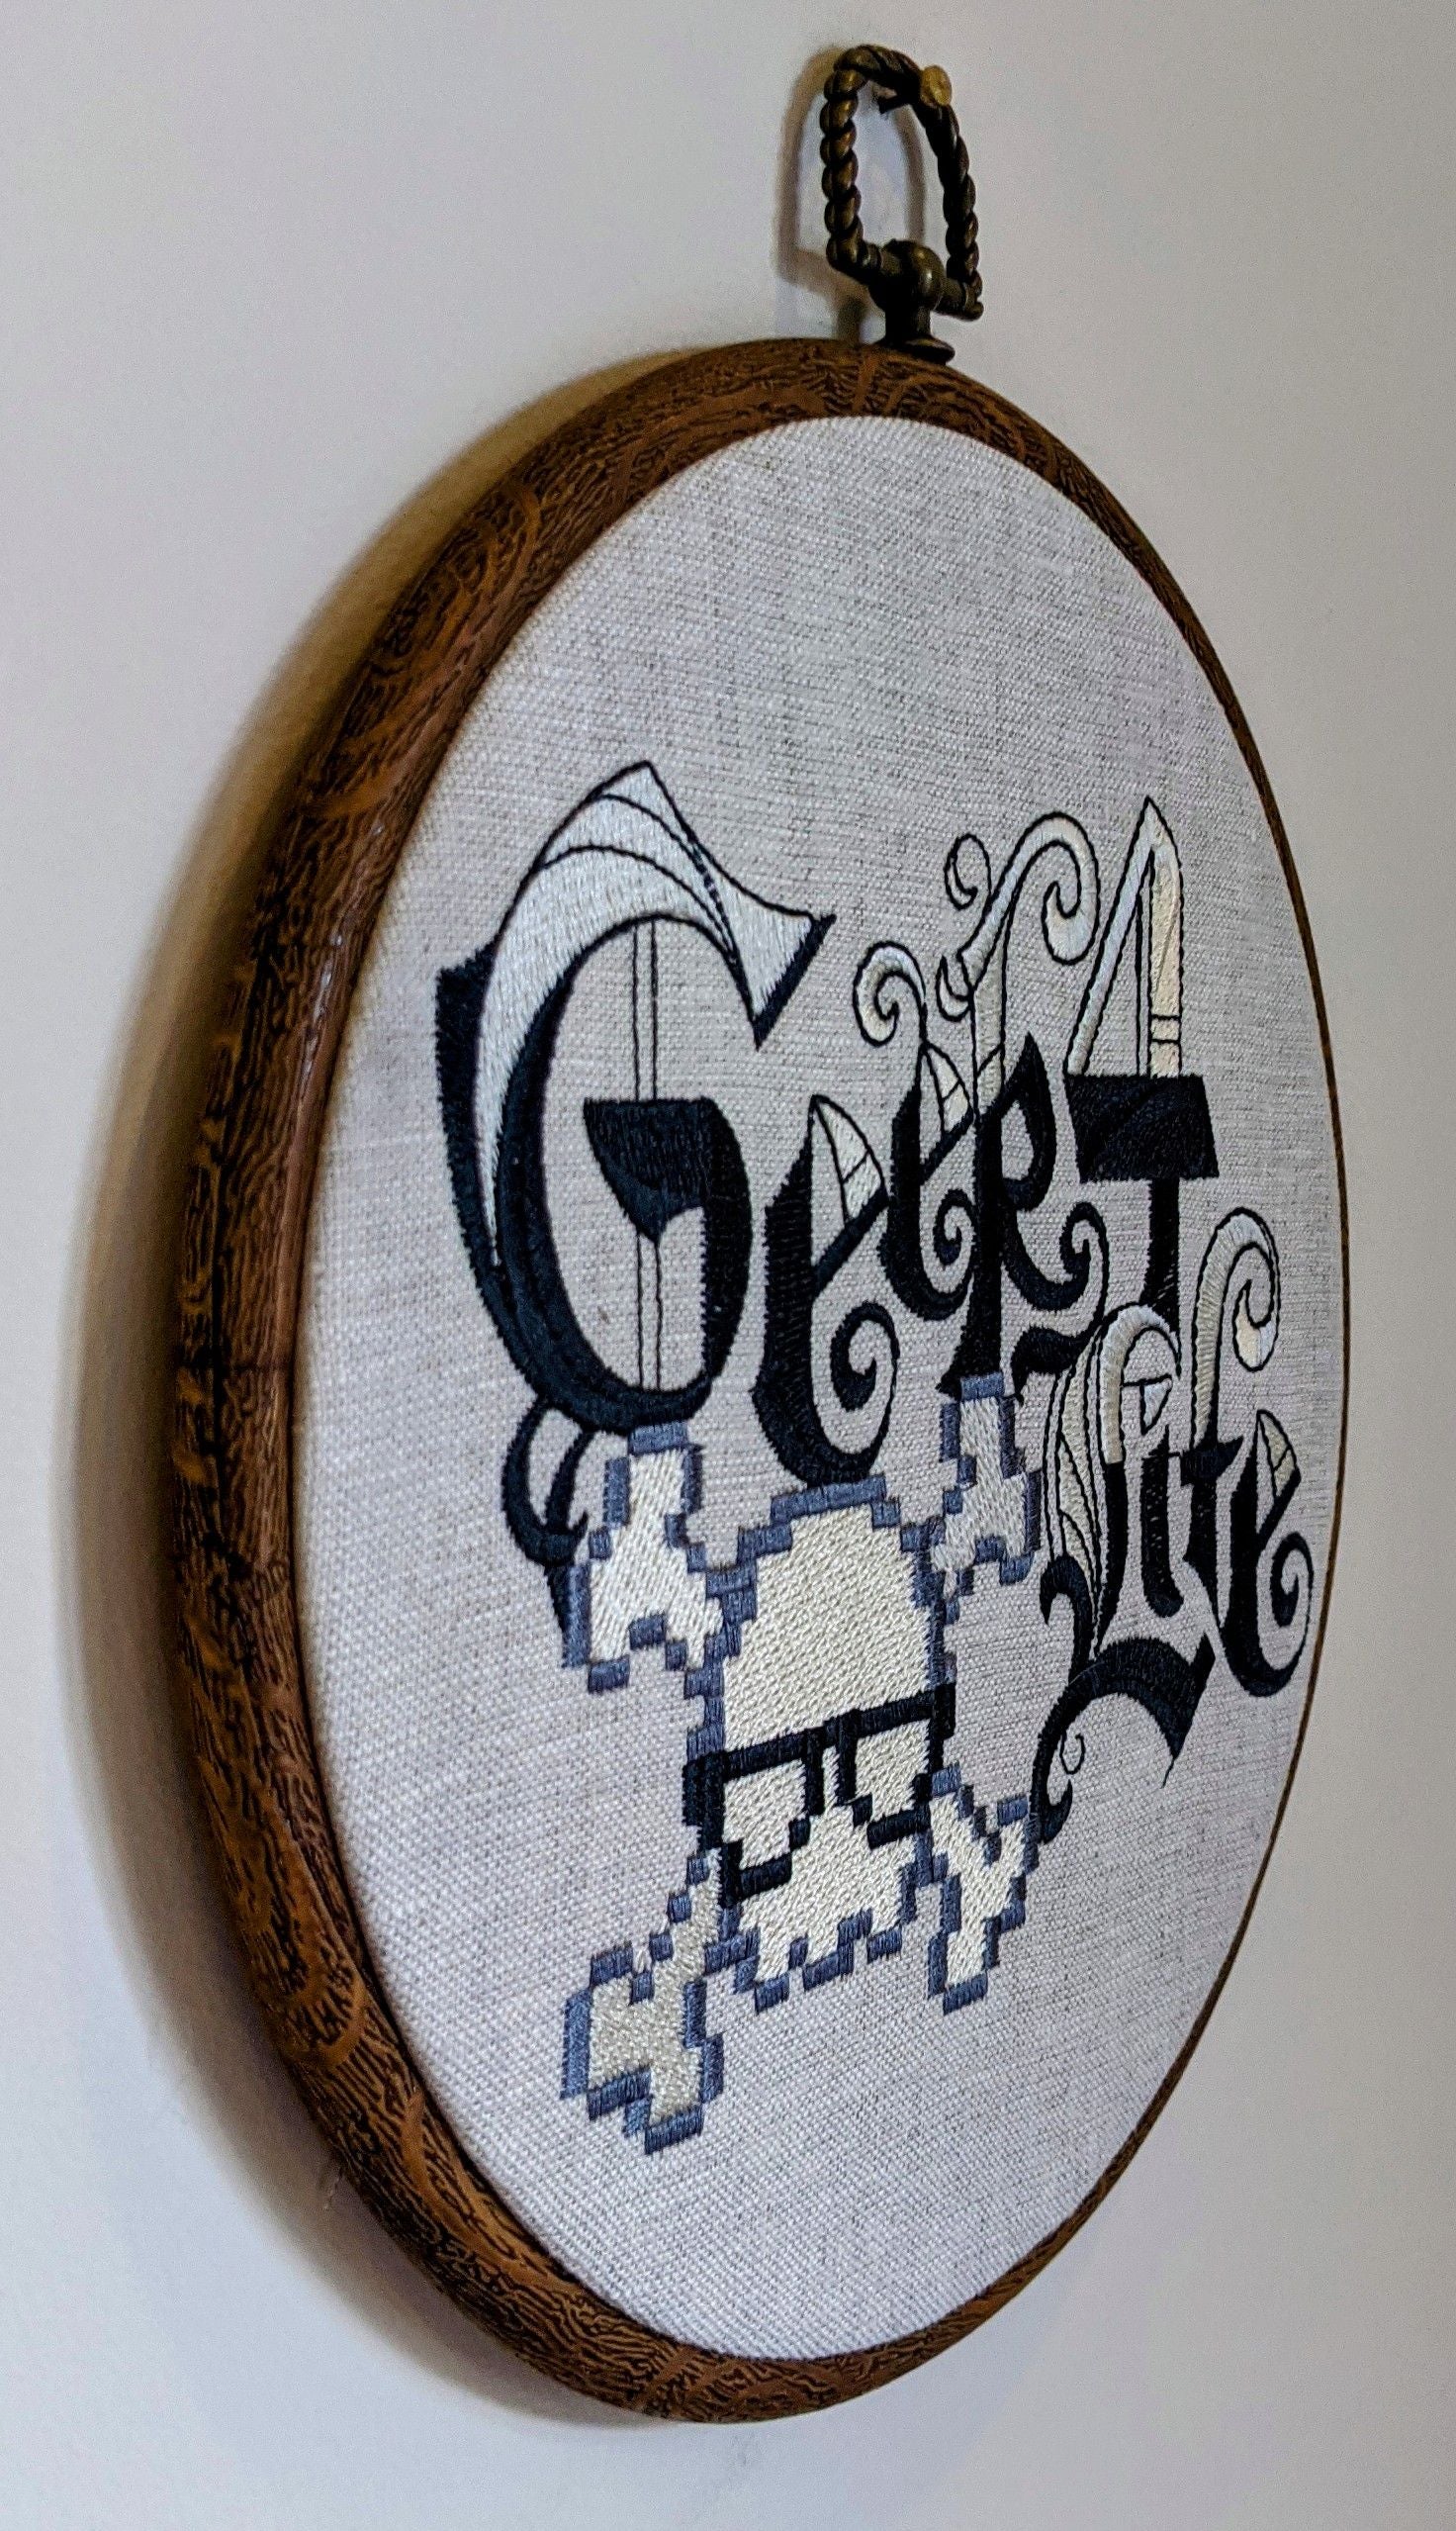 Geek 4 life.  Machine embroidery 8" hoop